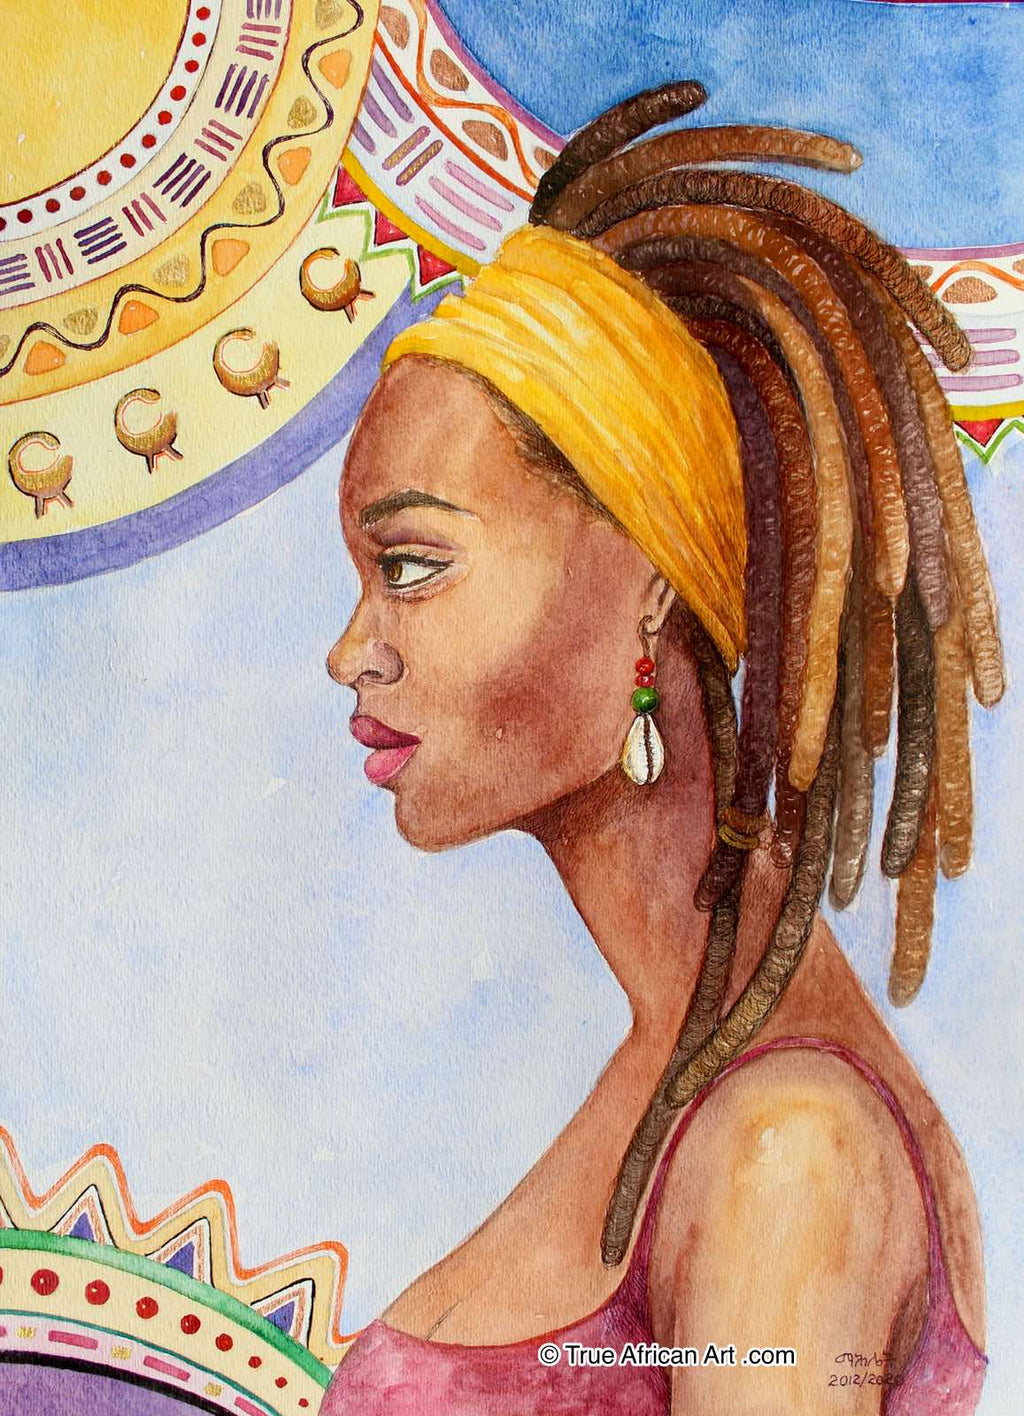 Mahlet  |  Ethiopia  |  "Aware"  |  Print  |  True African Art .com